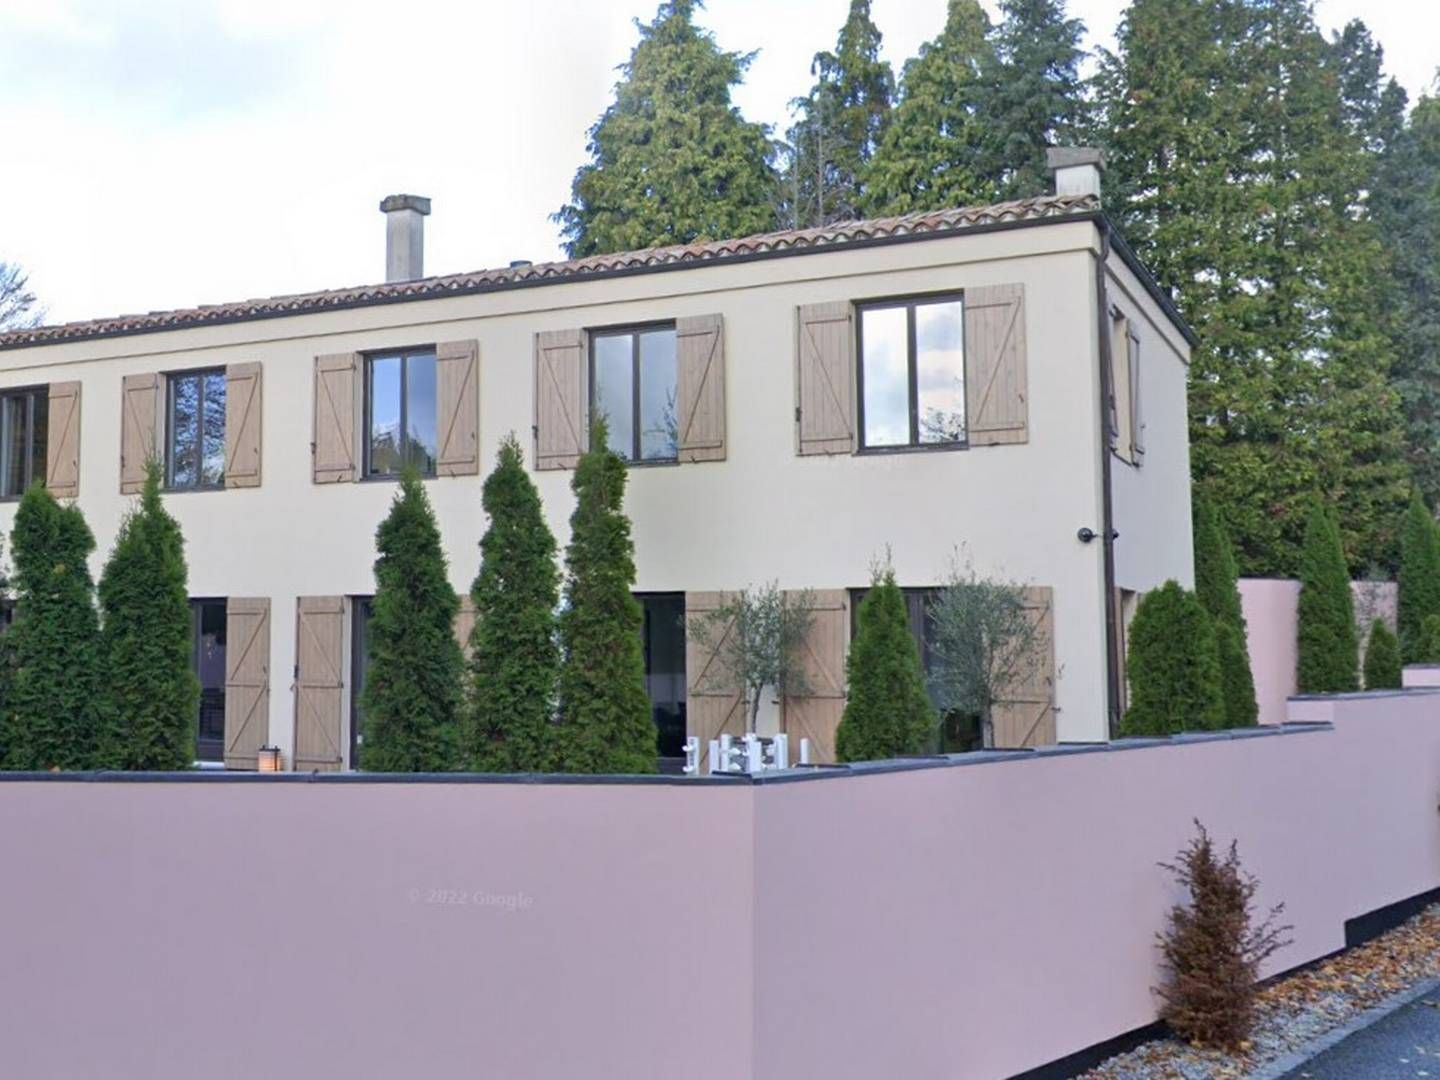 Den konkursramte ejendomsinvestor Nils Jansson har bopæl i denne villa i Rungsted, der nu er sat til salg til over 20 mio. kr. | Foto: Google